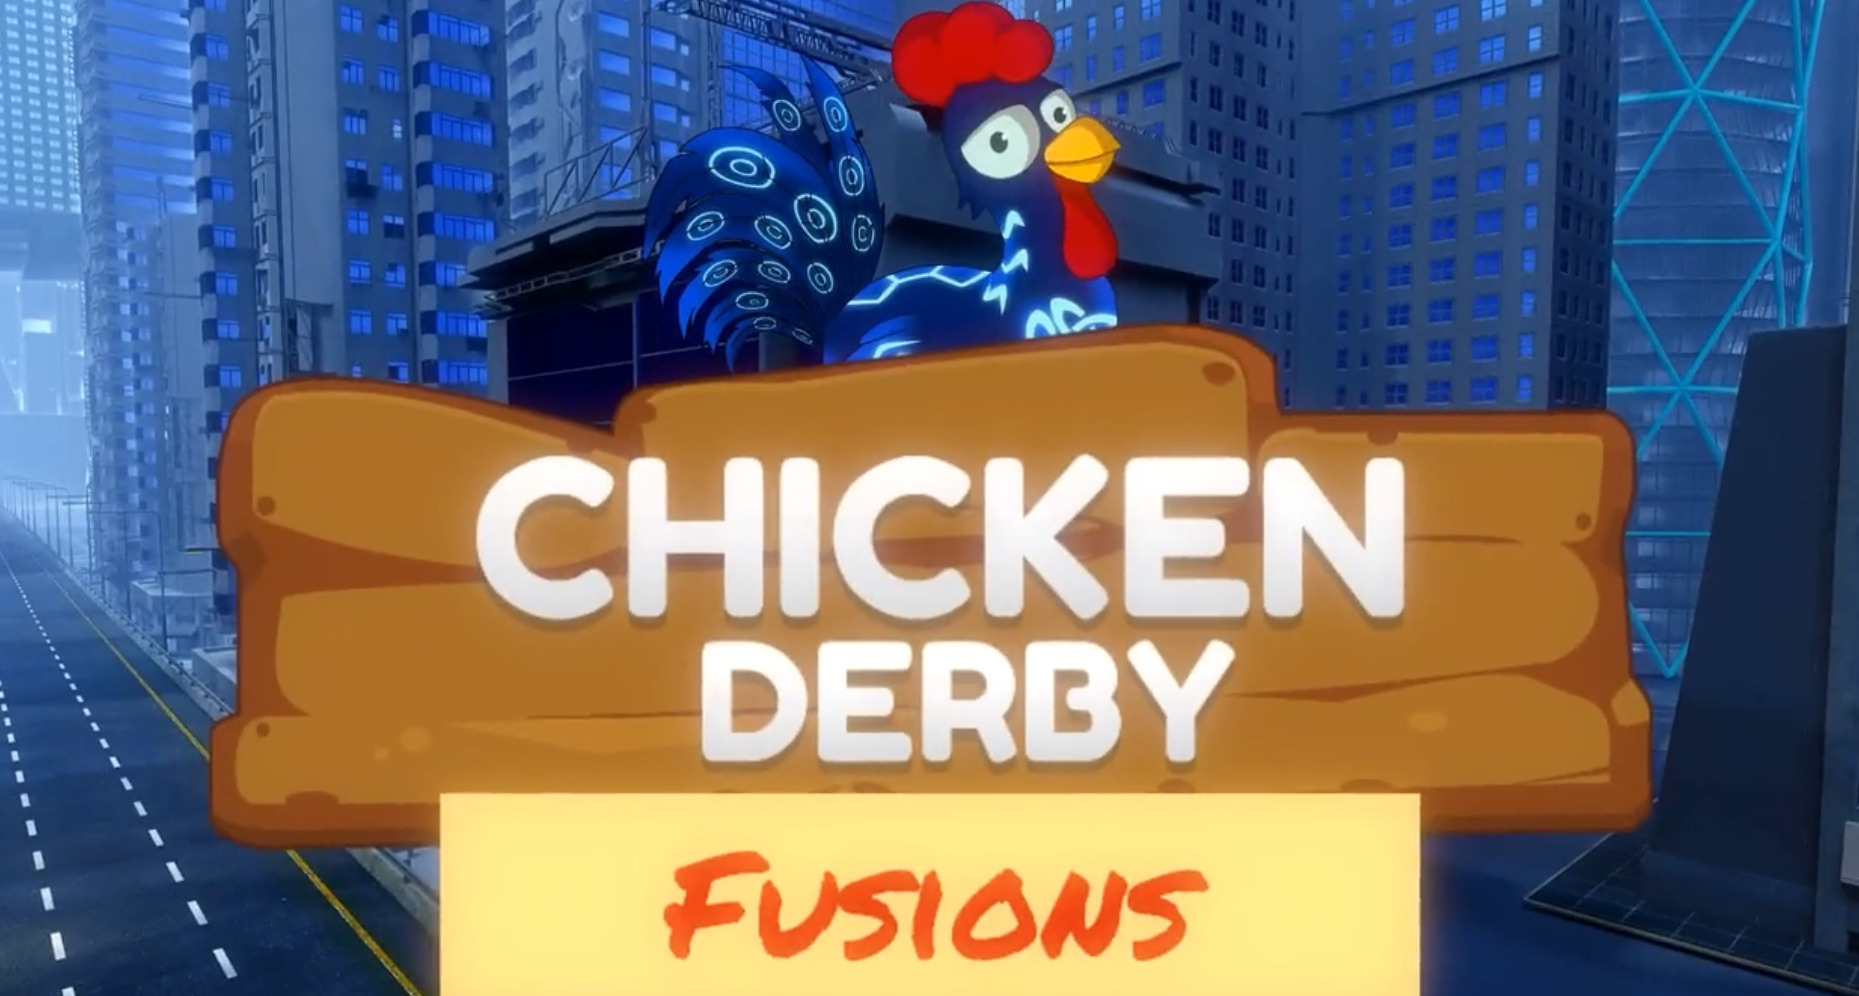 Chicken Fusion Arrives in Chicken Derby